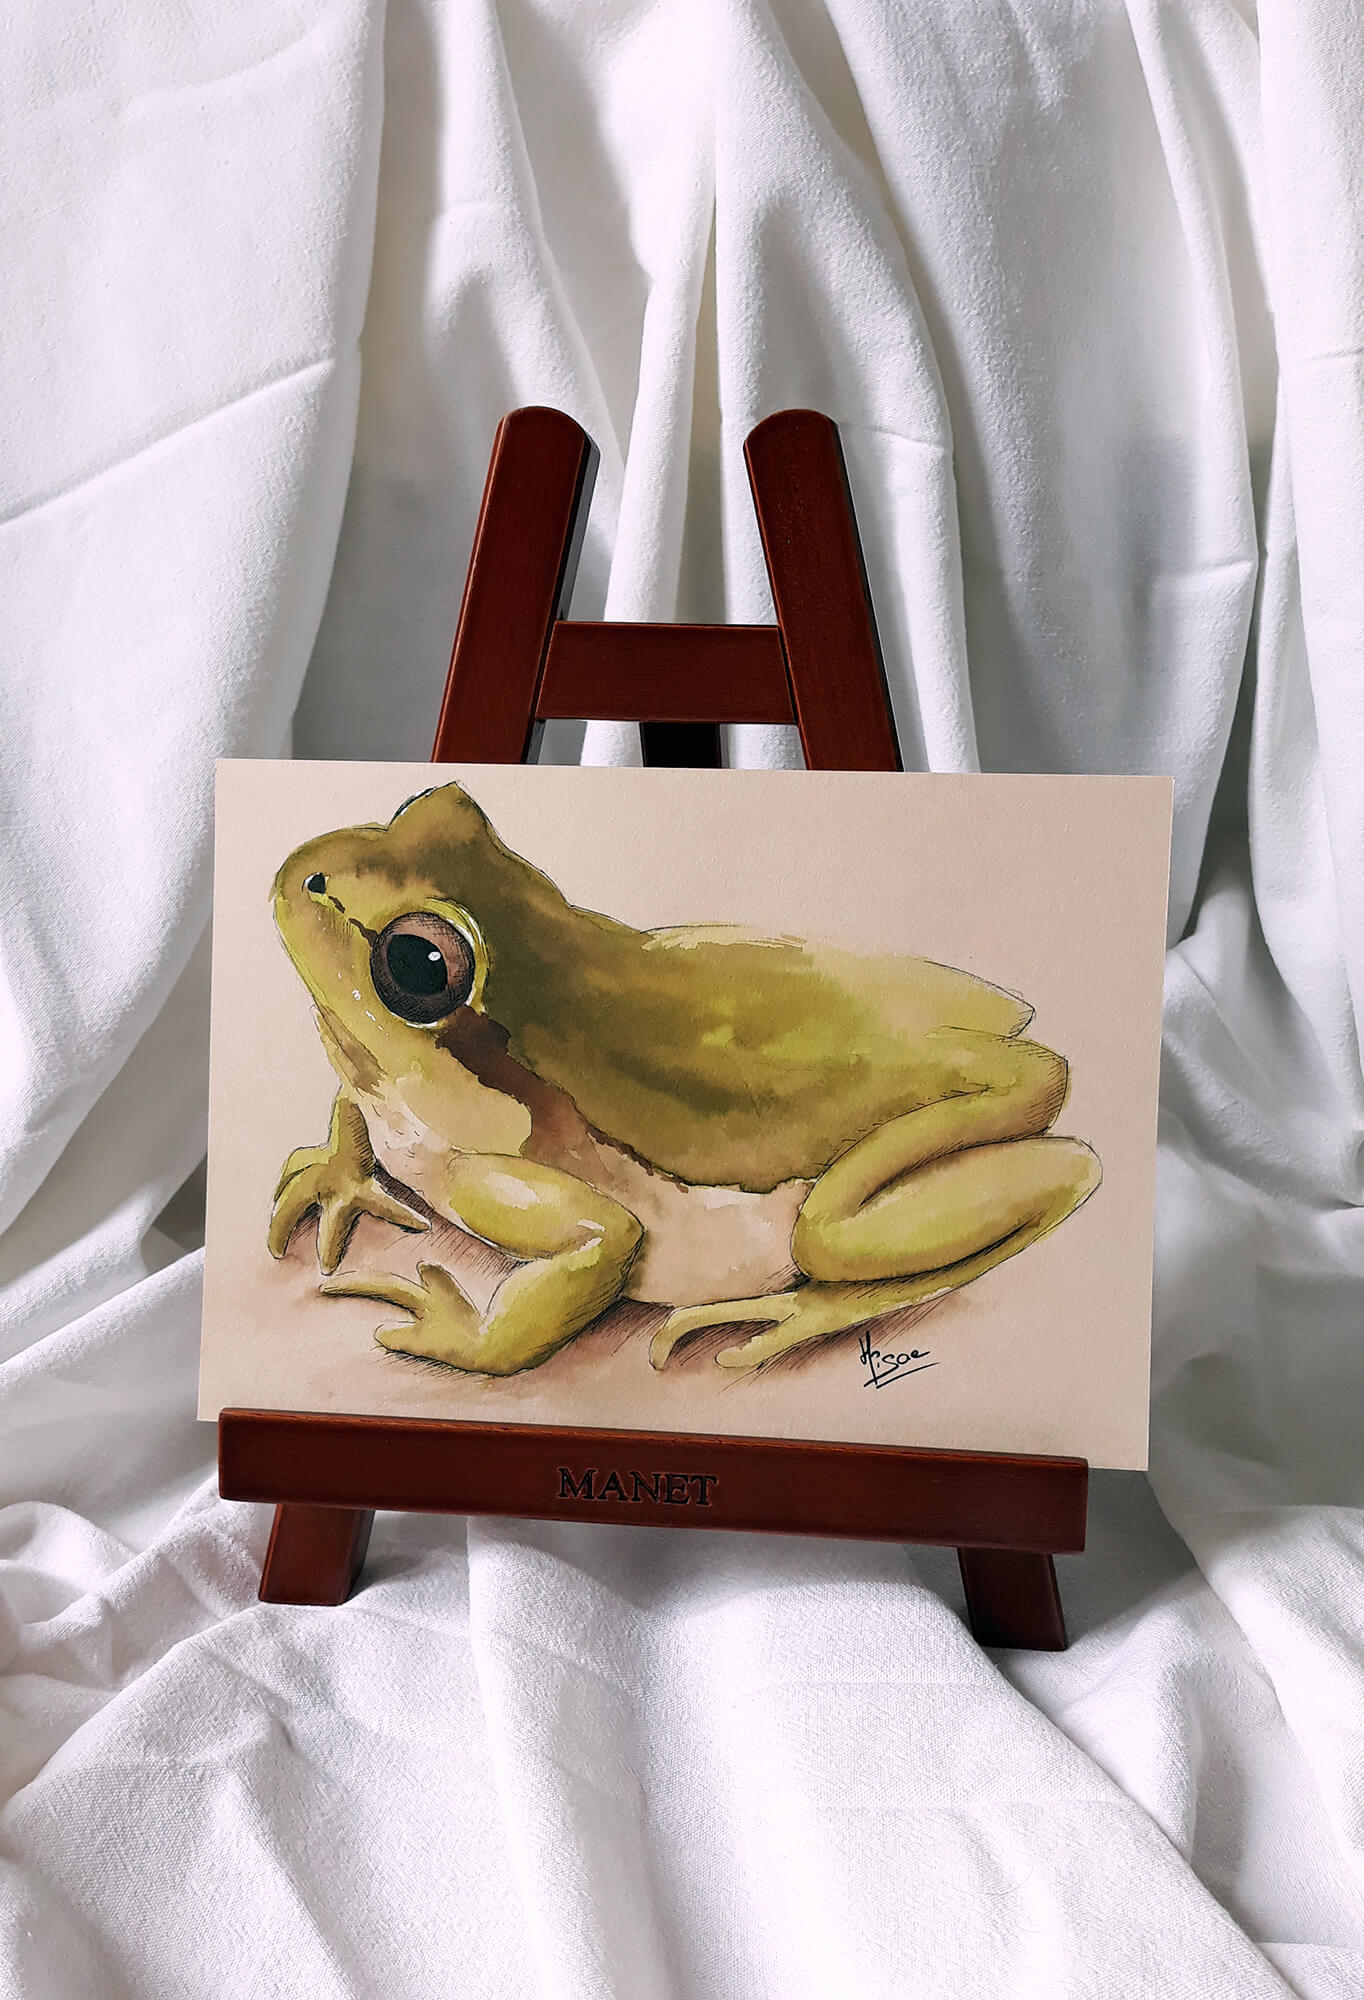 Dessin original à l'encre verte sur chevalet représentant une grenouille ©Hisae illustrations